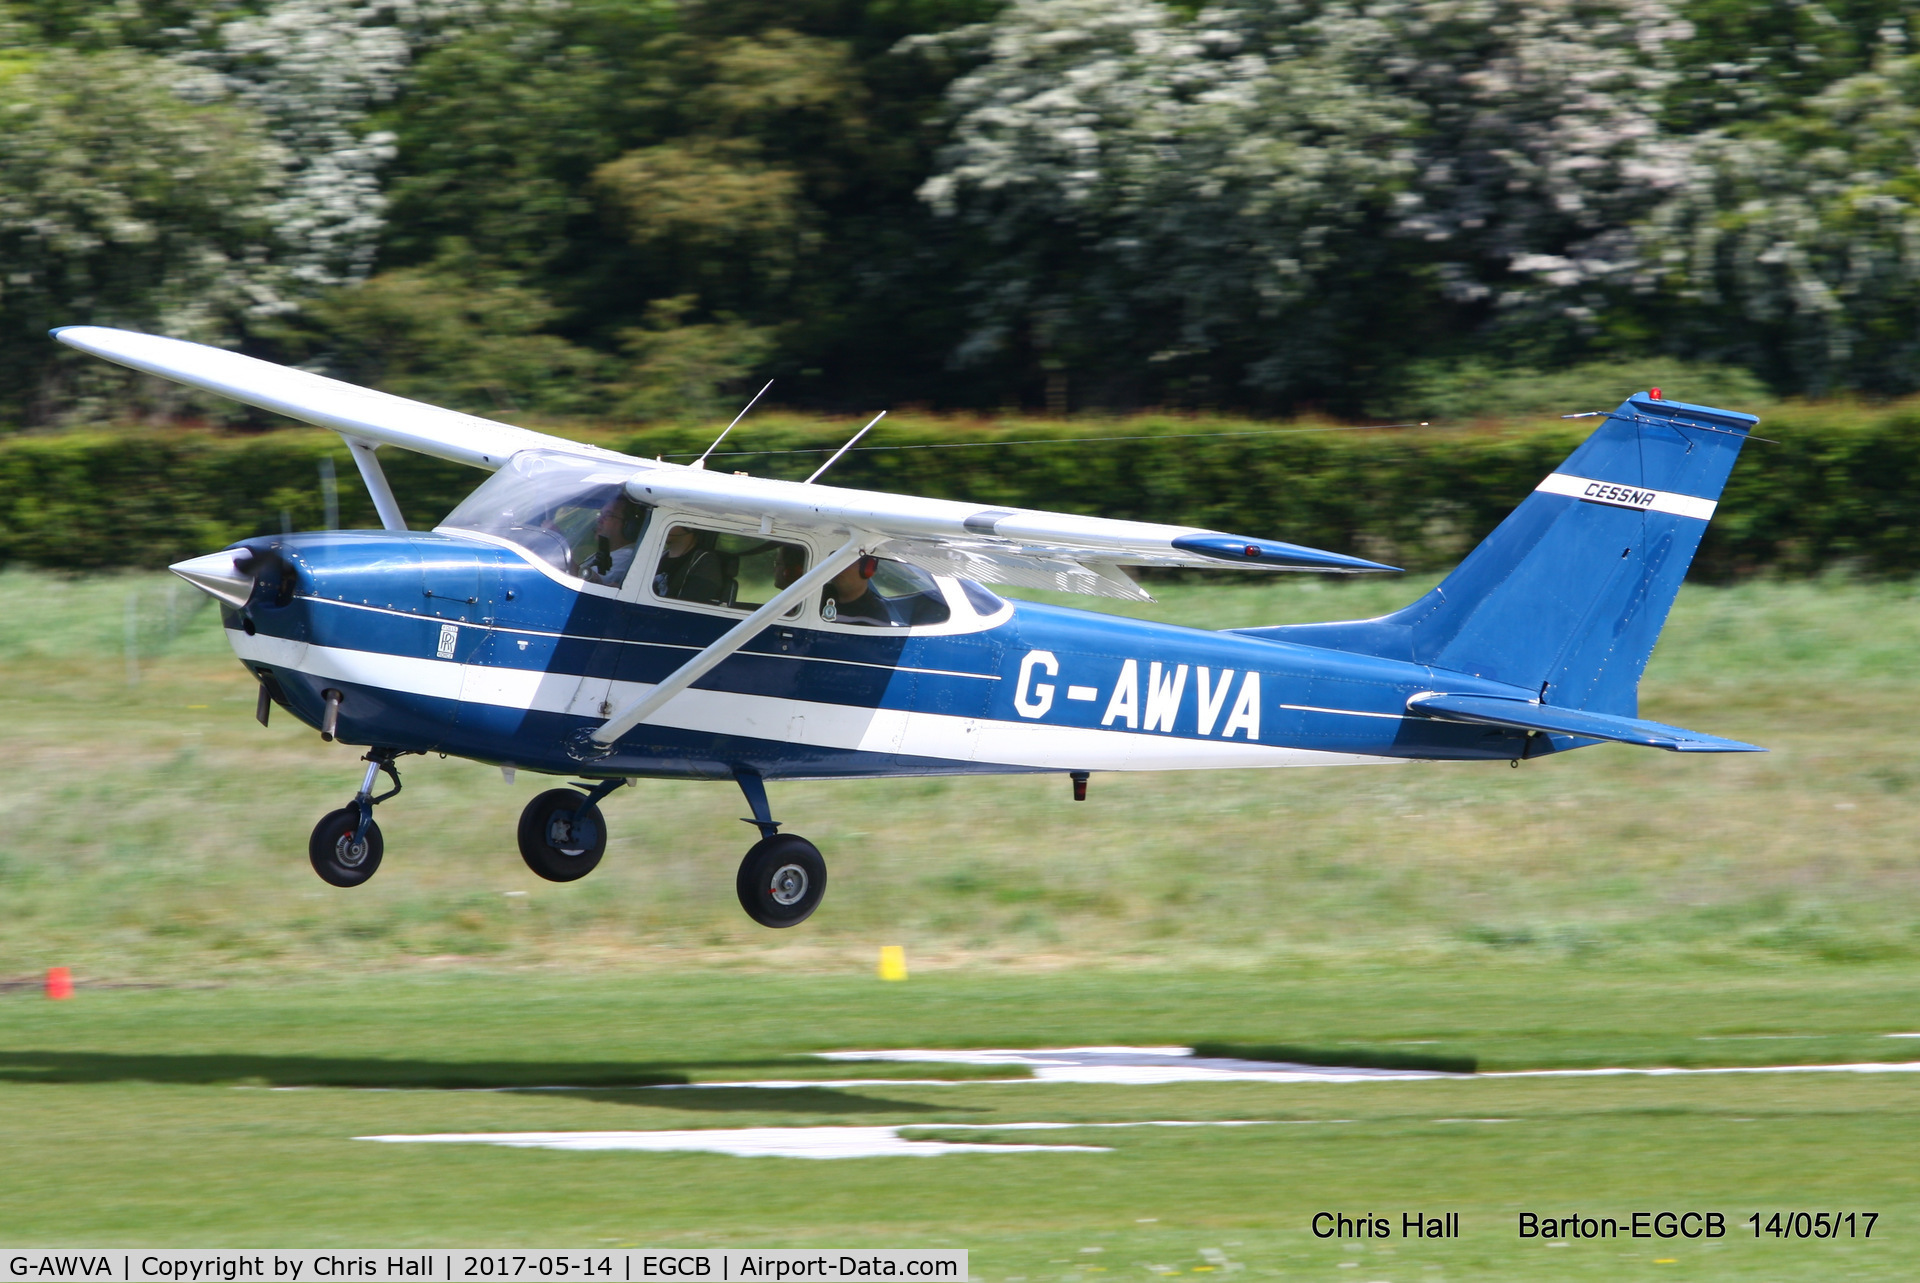 G-AWVA, 1968 Reims F172H Skyhawk C/N 0597, at Barton